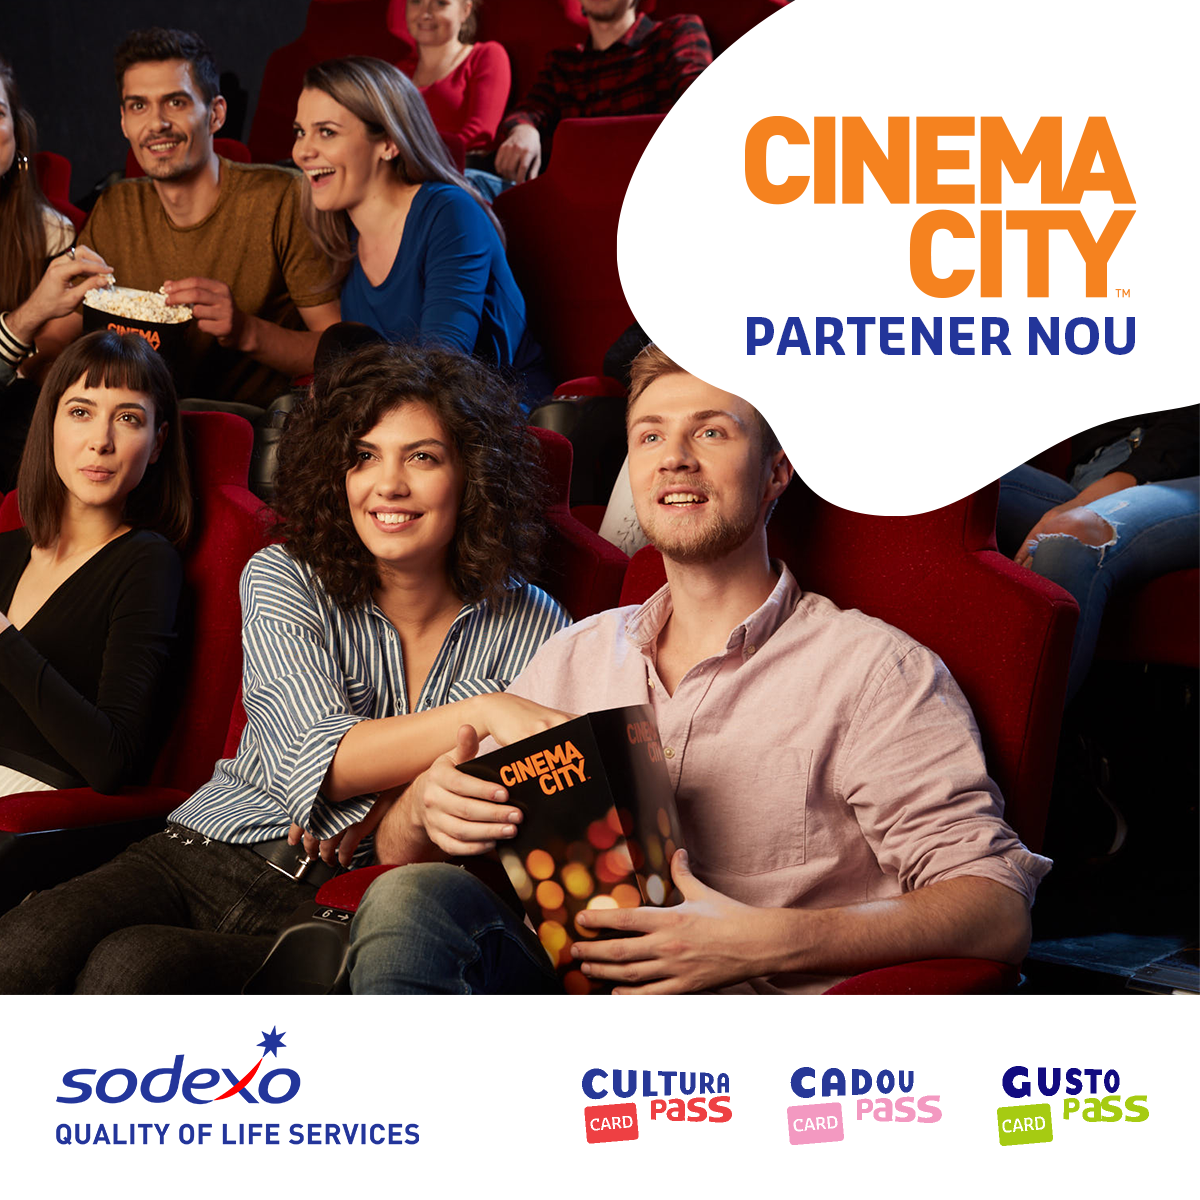 Sodexo România încheie un parteneriat cu Cinema City, lansând în premieră utilizarea cardurilor de beneficii extrasalariale în cinematografele din toată țara